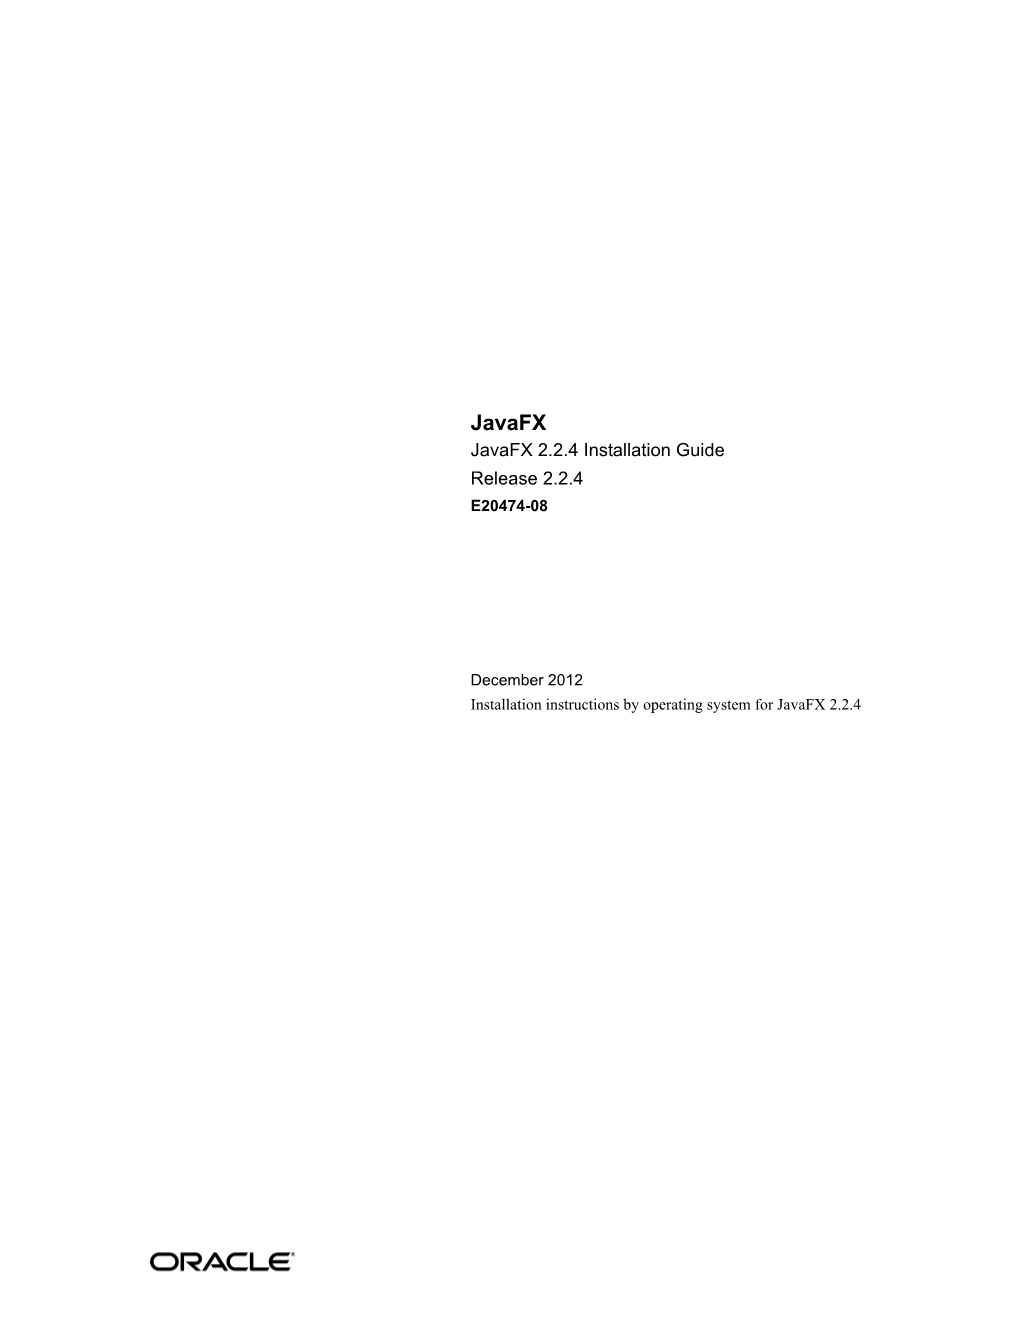 Javafx Javafx 2.2.4 Installation Guide Release 2.2.4 E20474-08